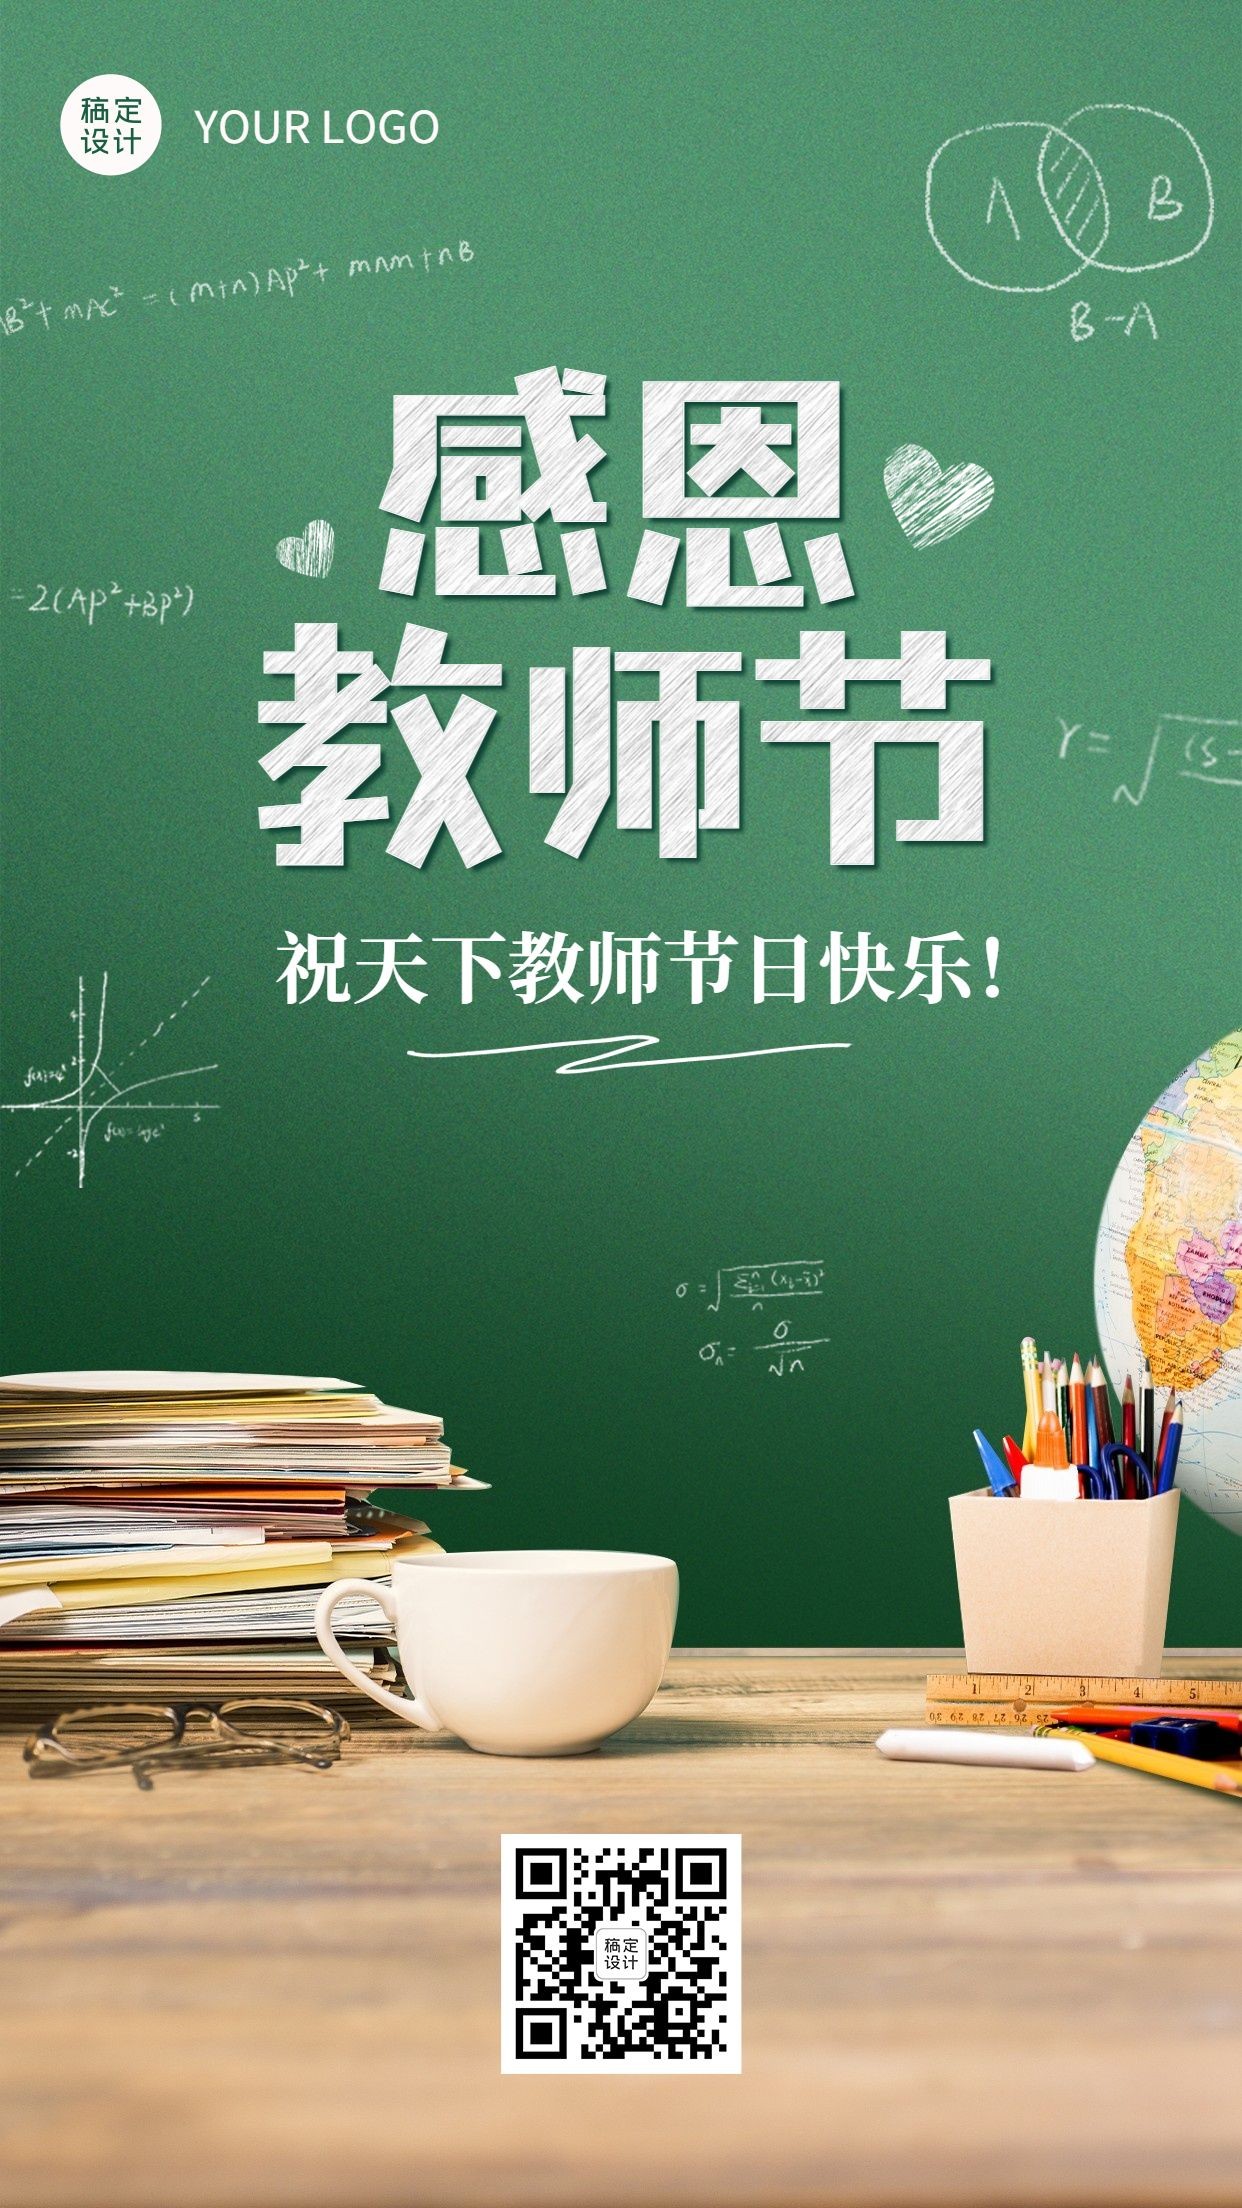 教师节企业商务节日祝福实景海报